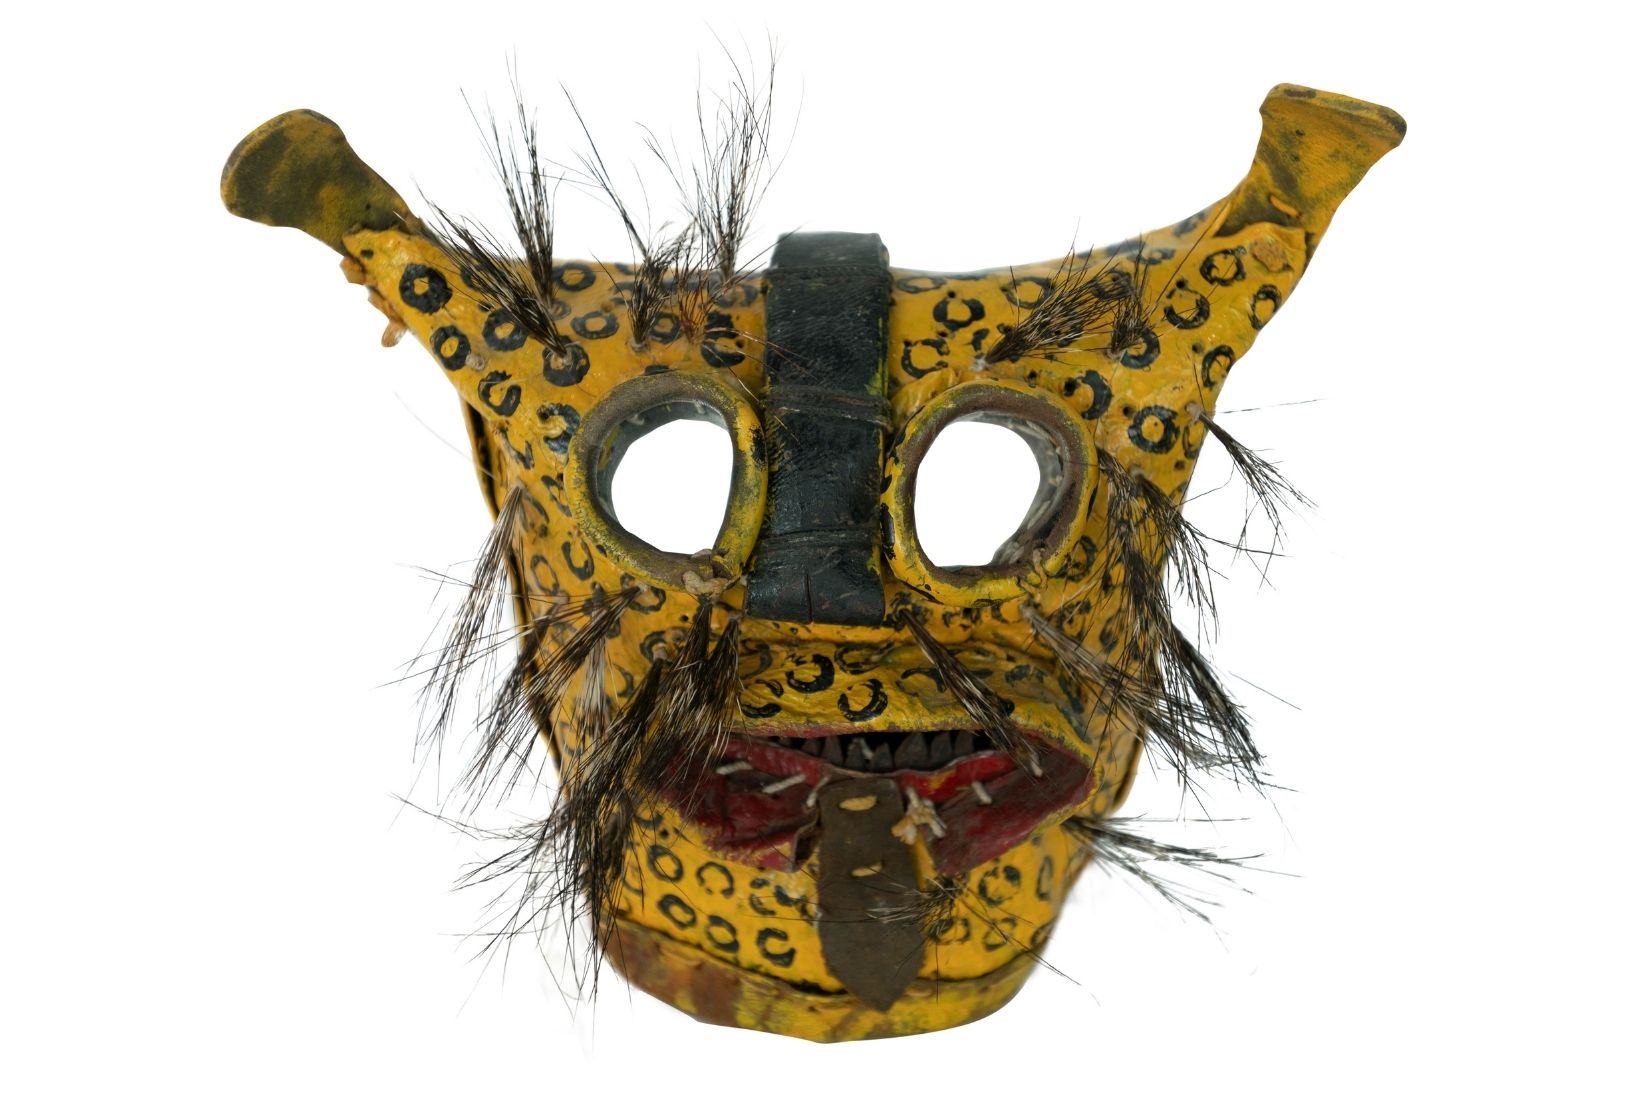 Máscara de jaguar en cuero policromado, recortado y cosido. Artesano desconocido. Zitlala, Guerrero. Col. Amparo Espinosa Rugarcía donada a AmigosMAP. (Foto: EKV).